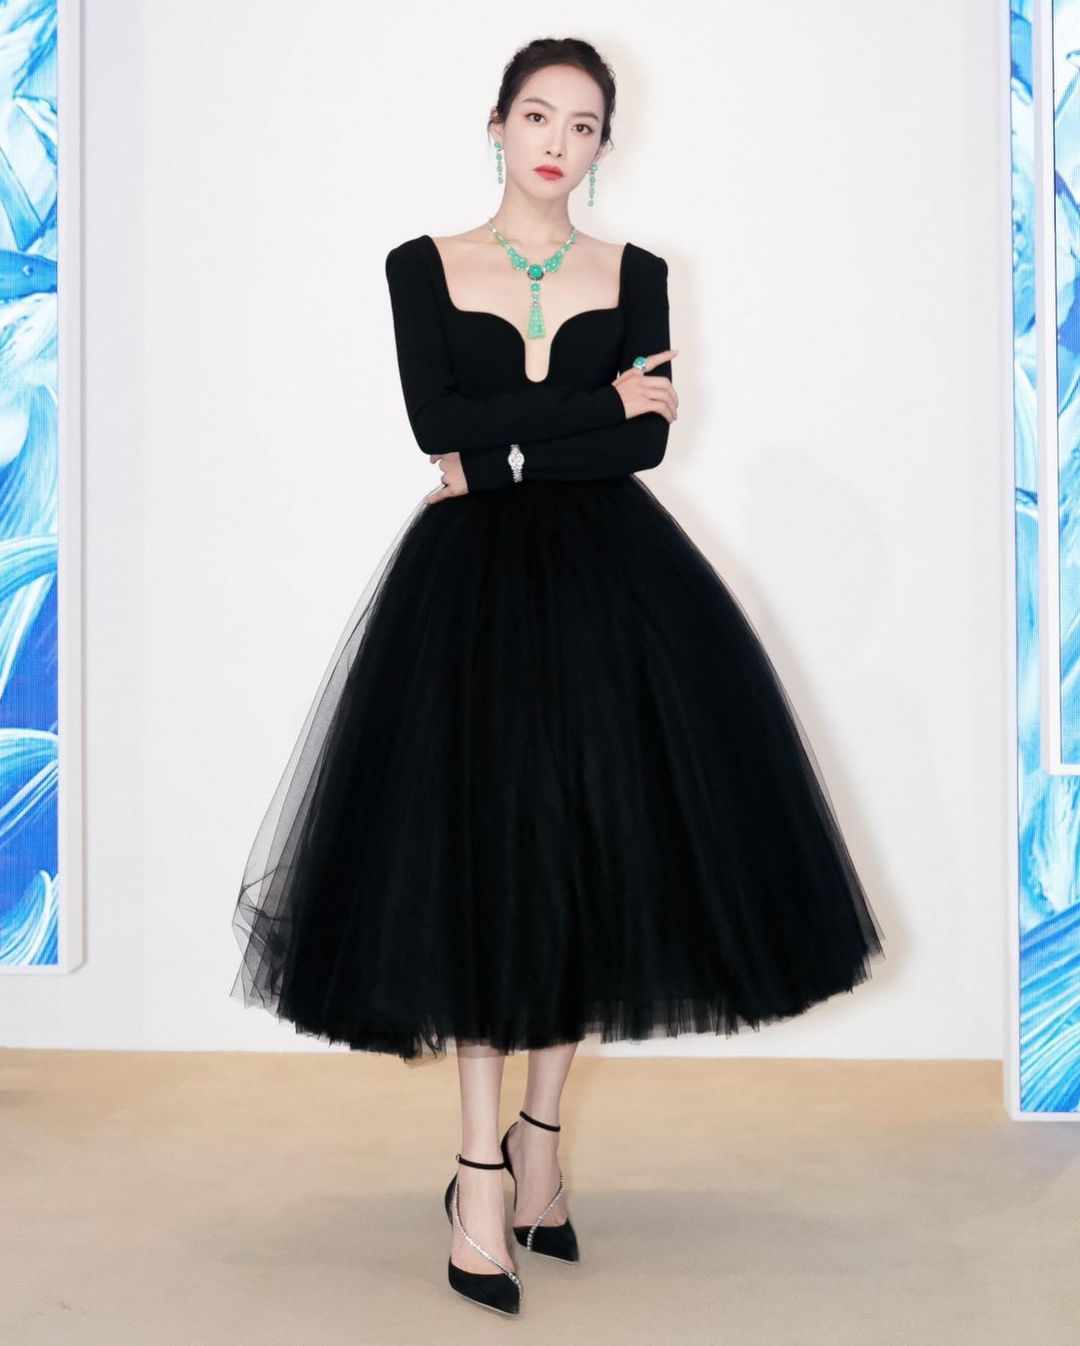 Nữ thần Kim Ưng Tống Thiến diện váy đen của thương hiệu Carolina Herrera khi đến dự sự kiện của Cartier